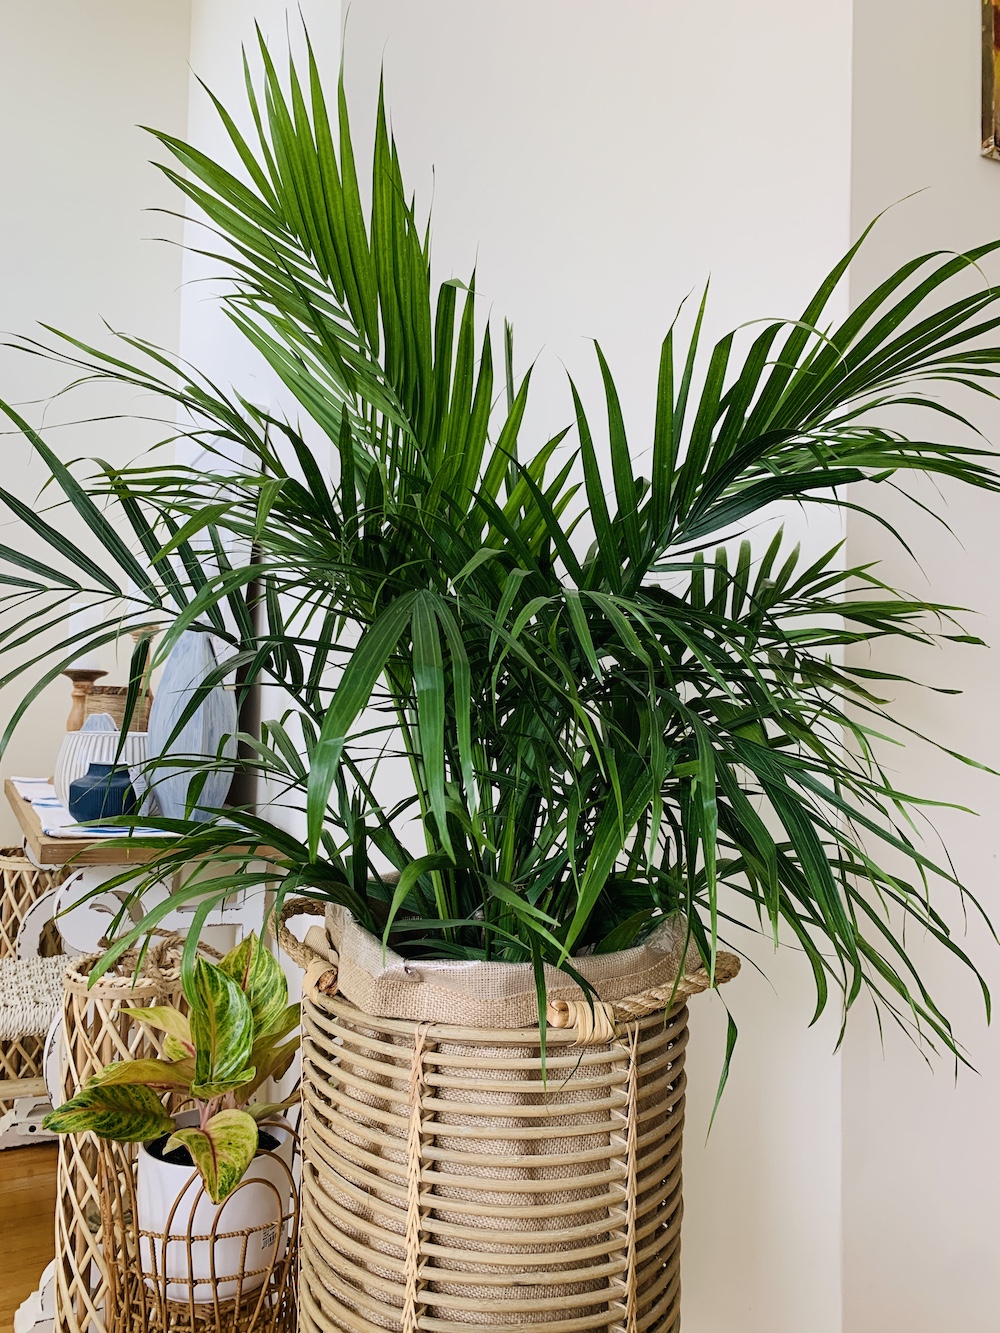 Grow Majesty Palm Majesty Palm 3 #Palms #MajestyPalm #IndoorPlants #HousePlants #Solutions #GrowMajestyPalm #GoGreen